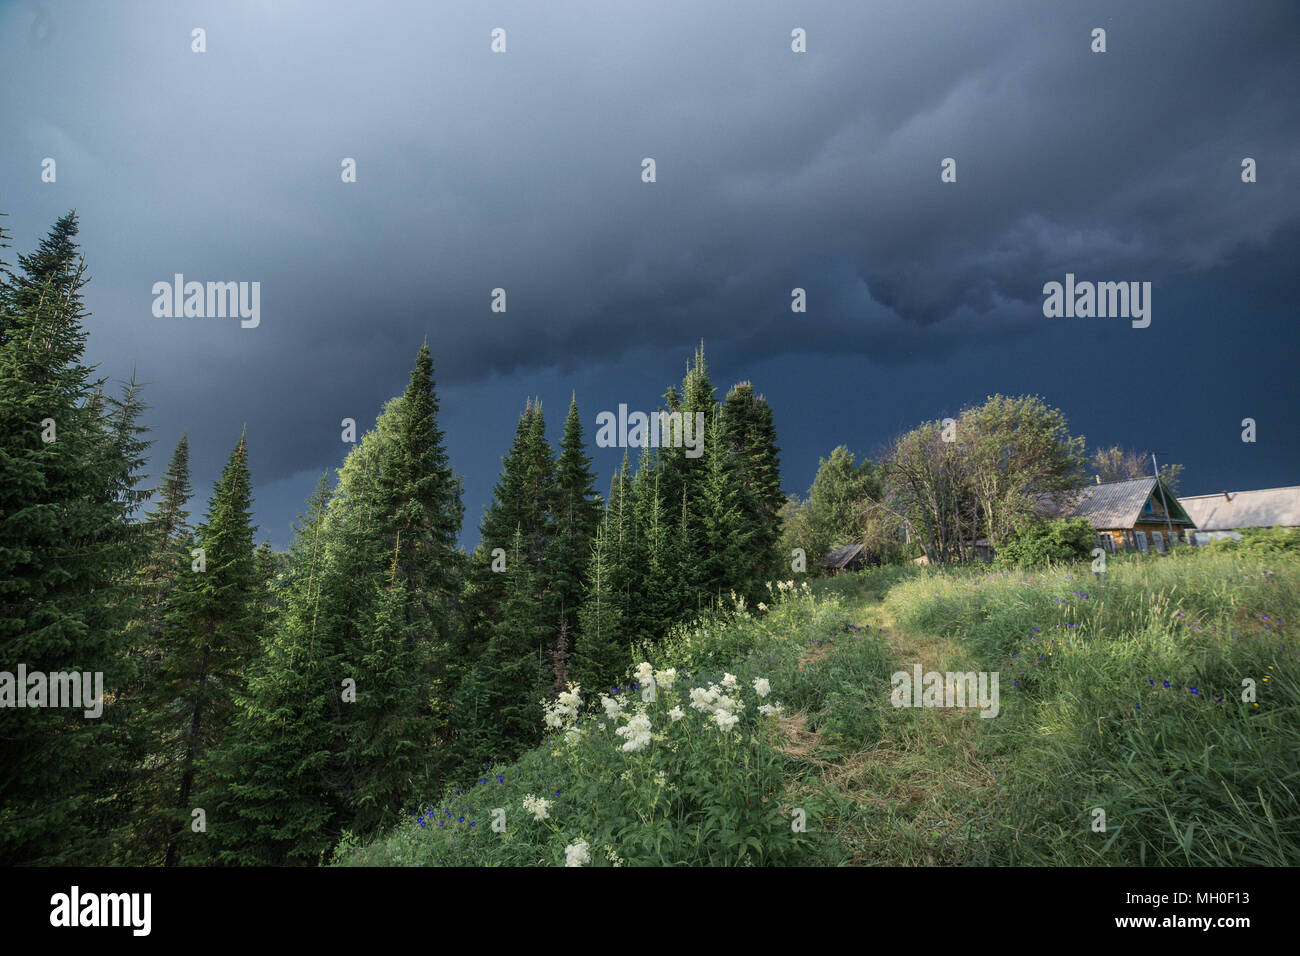 Villaggio atmosferica paesaggio con la foresta di pini, prato verde, accogliente e vecchie case blu scuro pioggia nuvole prima di heavy rain. Foto Stock